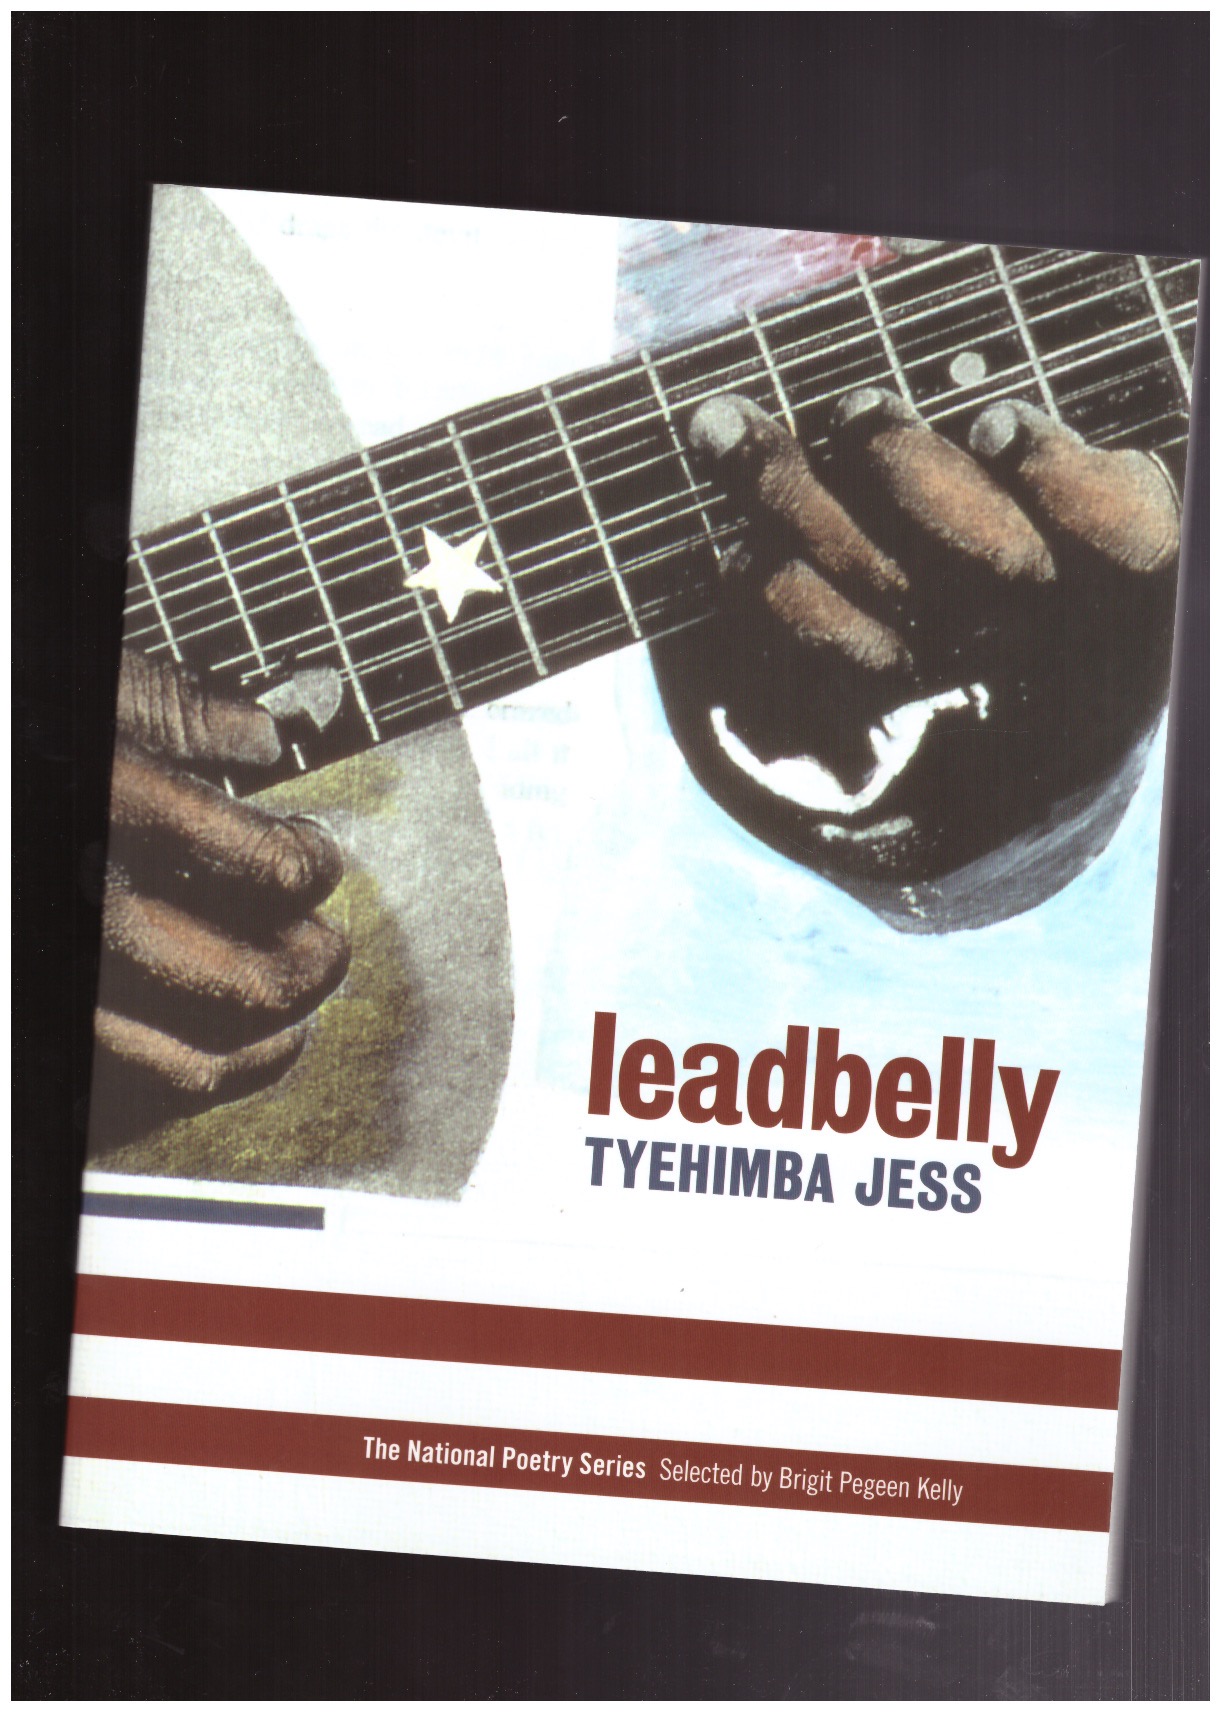 TYEHIMBA, Jess - Leadbelly